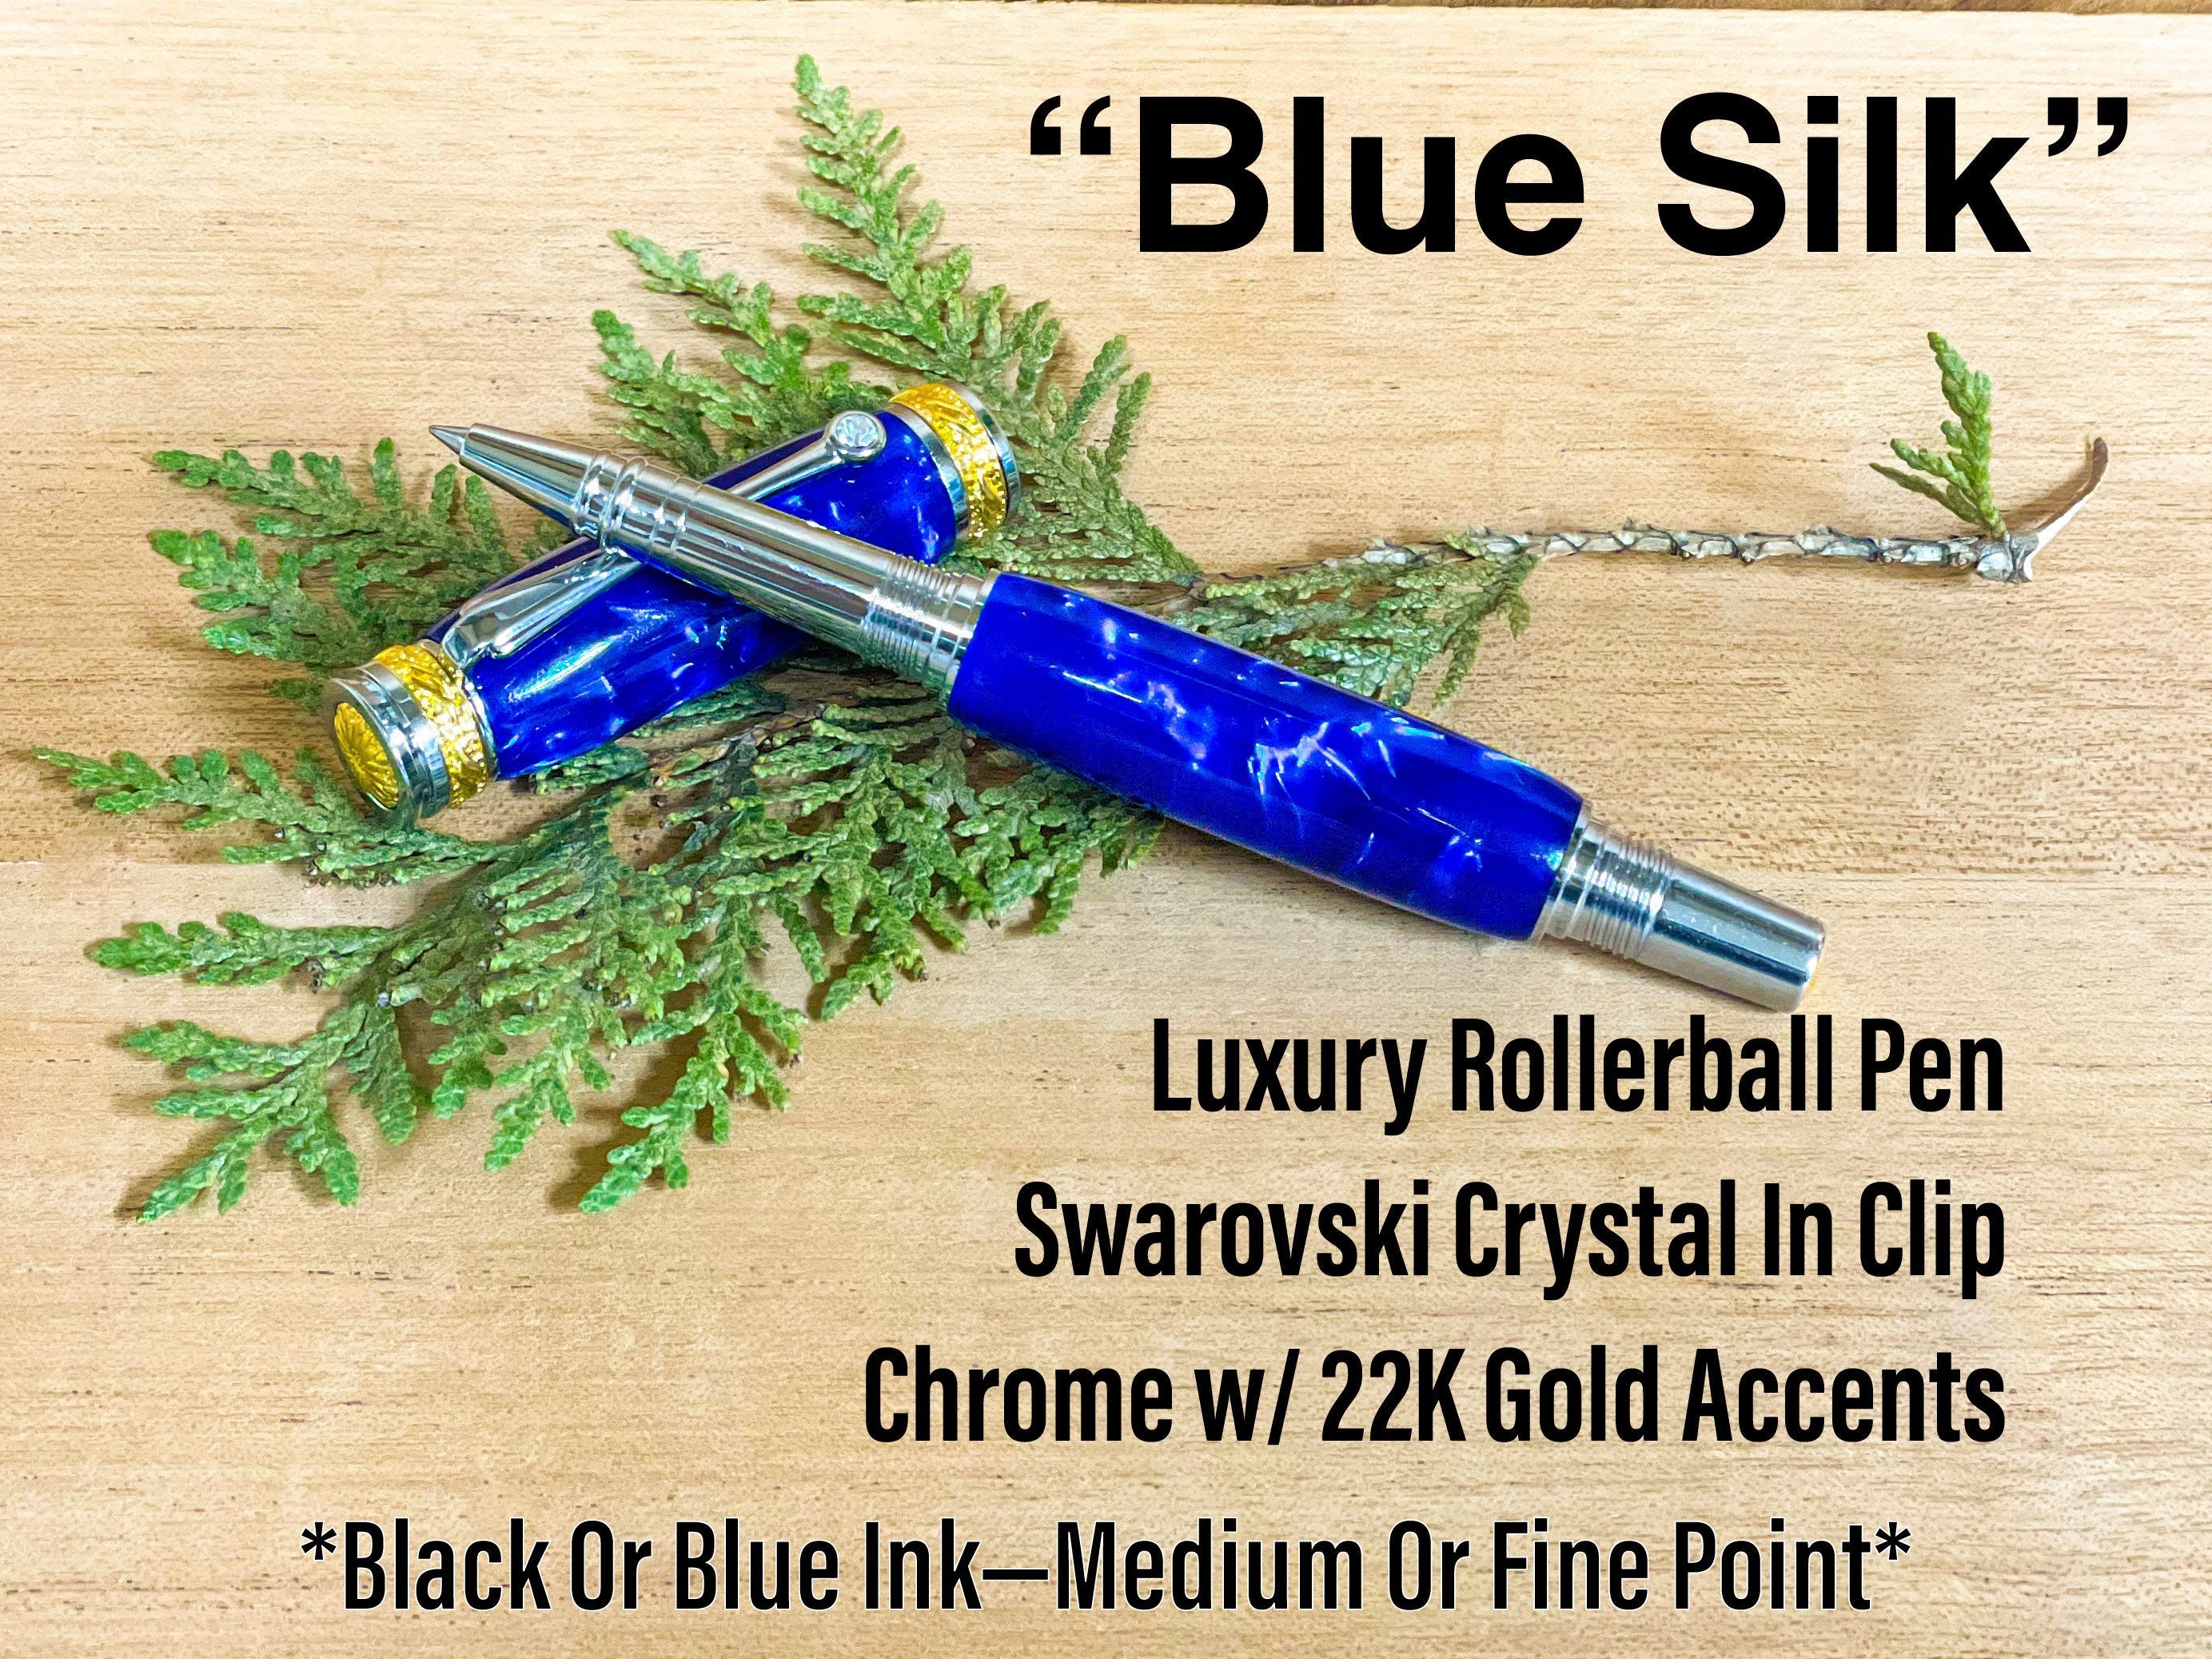 2 recharges pour stylo bille (M), Royal Blue